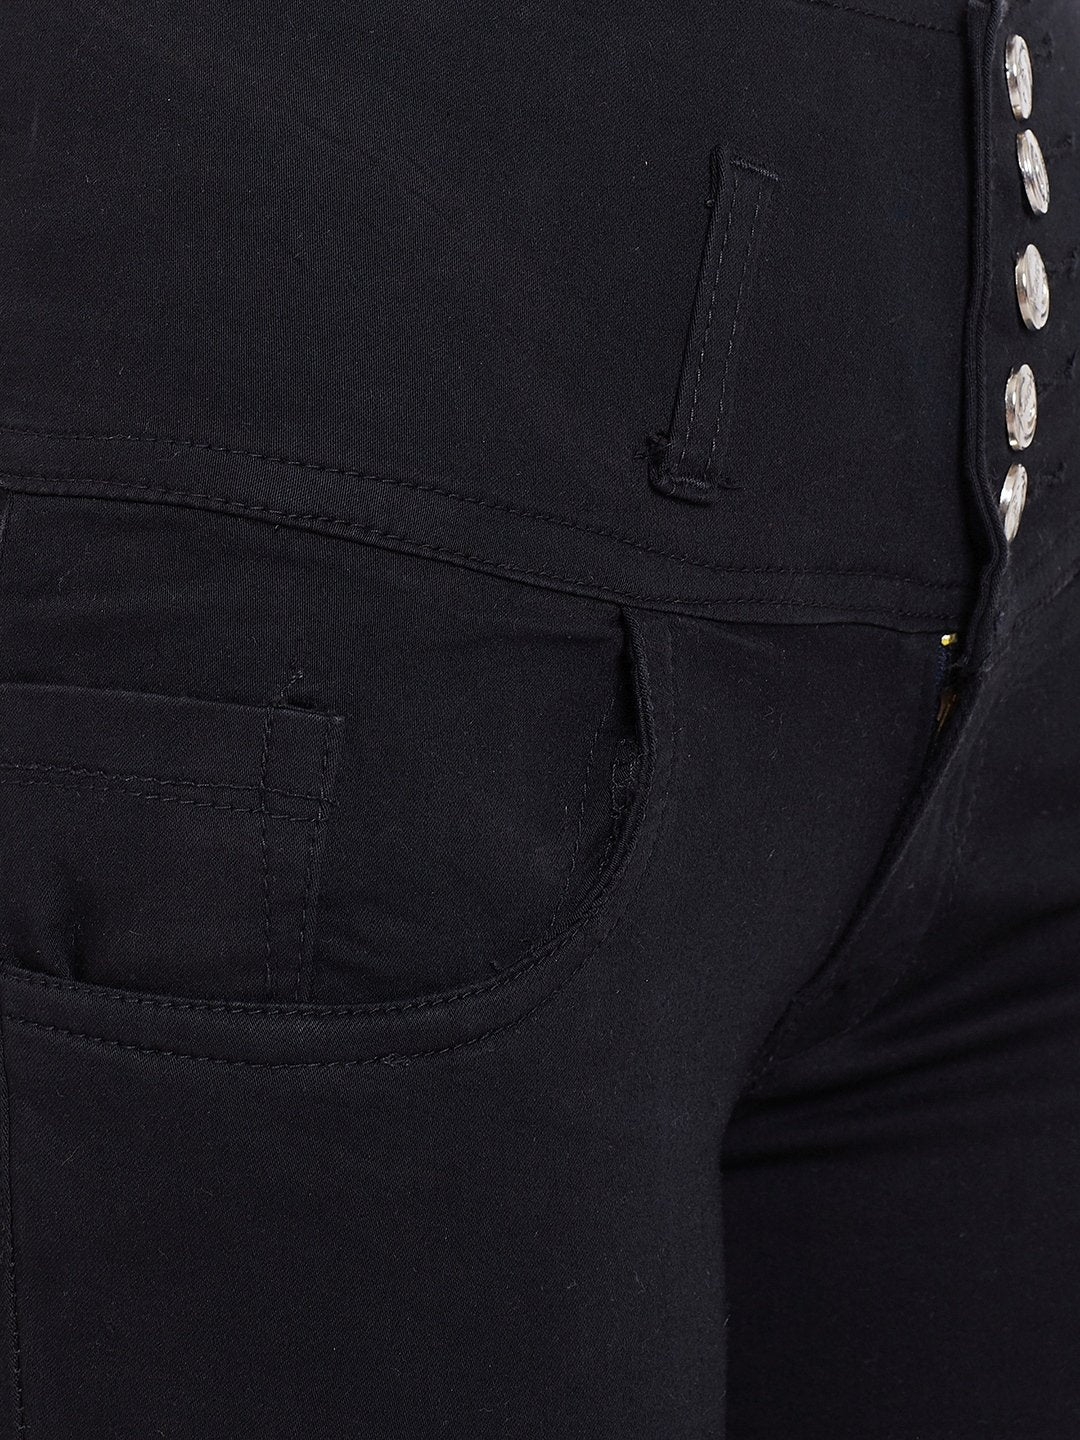 High Waist 5 Button Black Capris - NiftyJeans